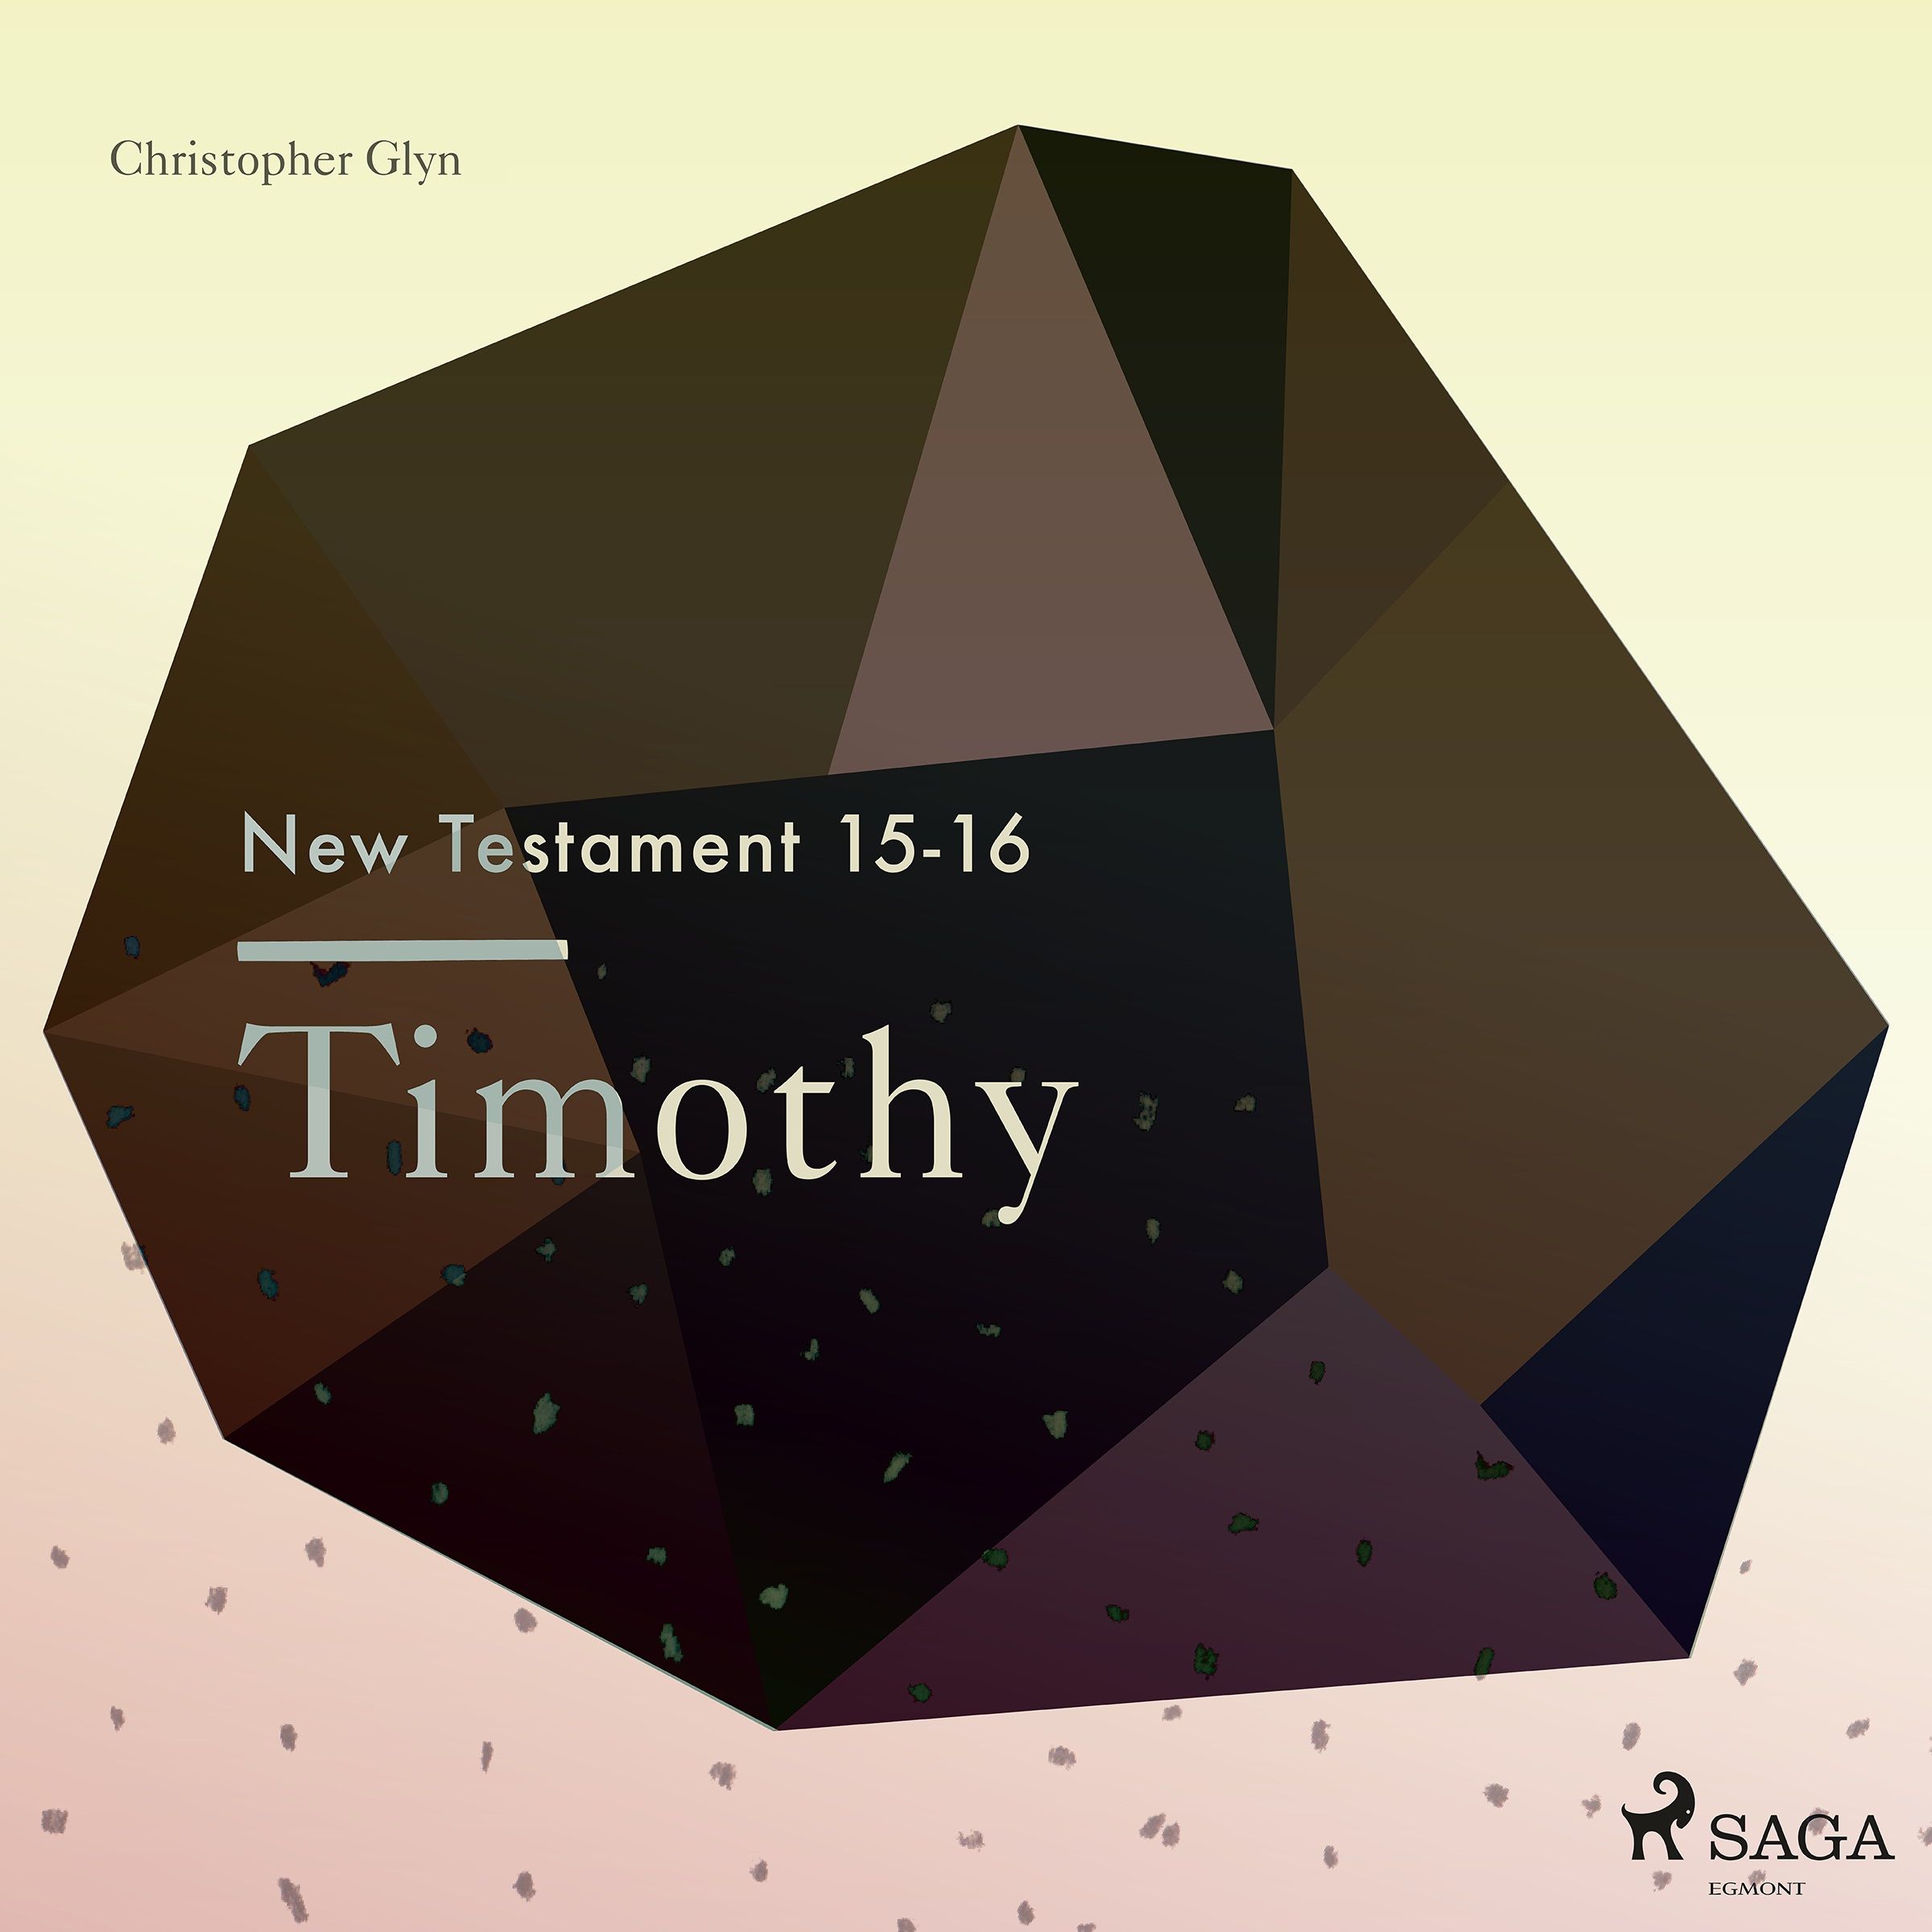 The New Testament 15-16 - Timothy, lydbog af Christopher Glyn